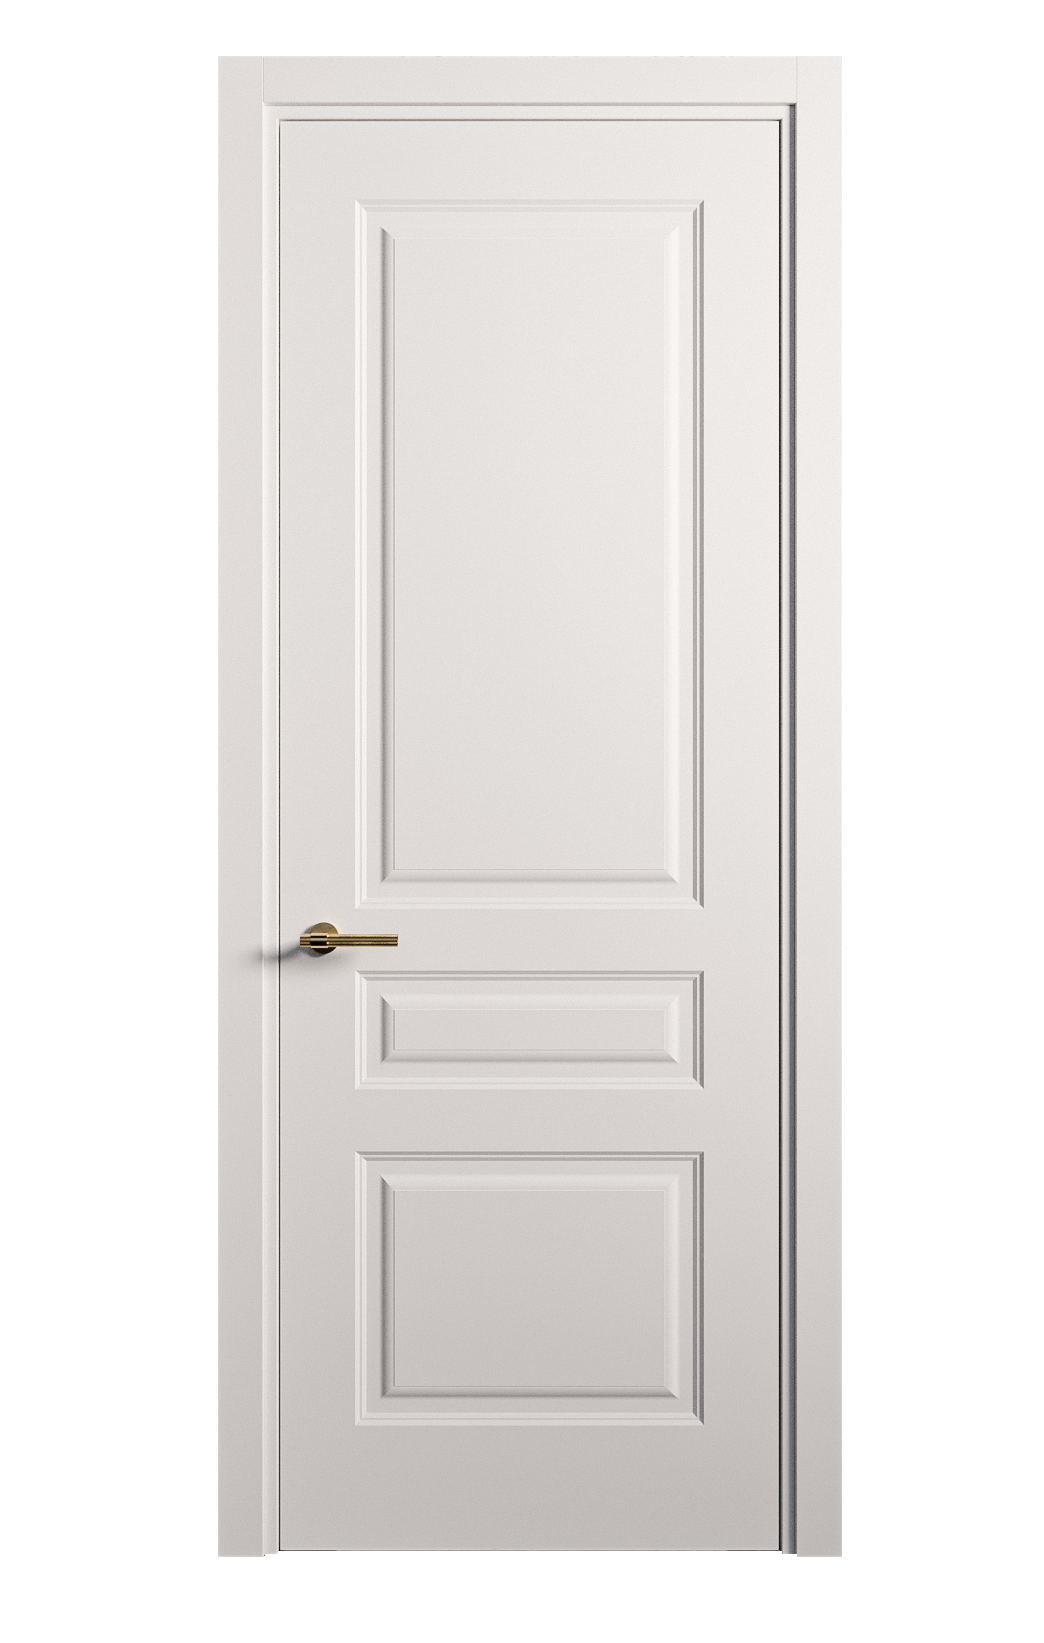 Межкомнатная дверь Вита-2 глухая эмаль ral 9003 26342